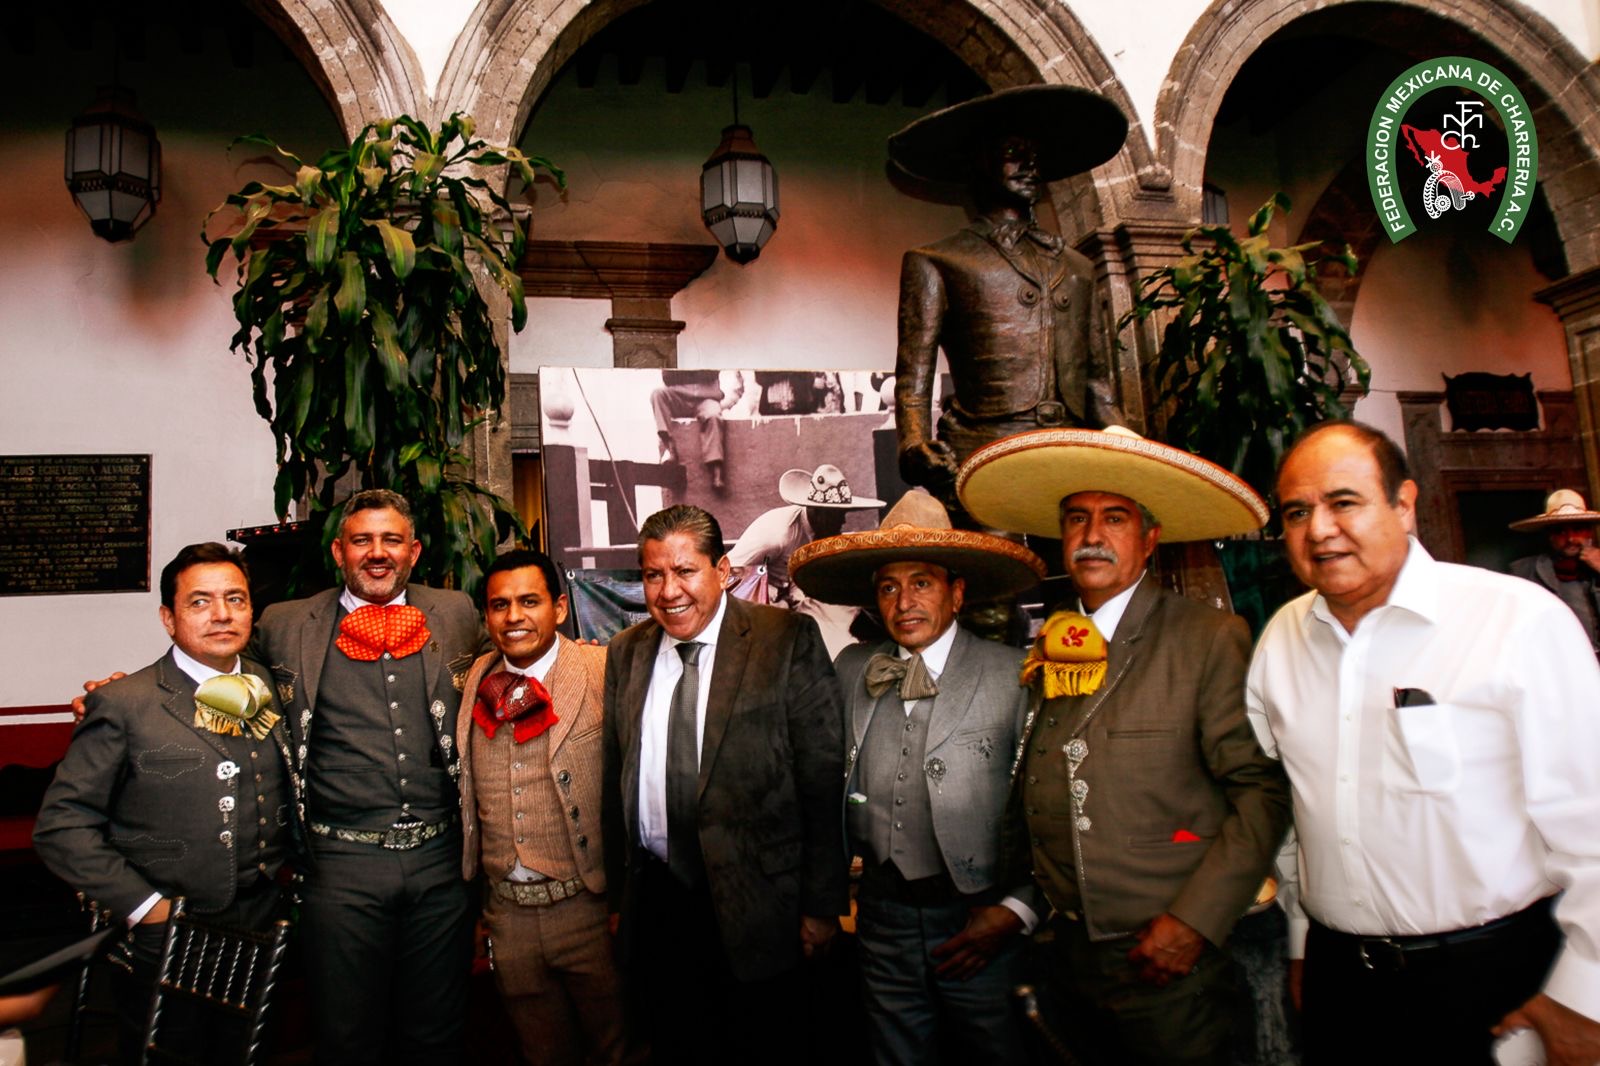 La Federación fungió como excelente anfitrión, agasajando a la delegación del Gobierno de Zacatecas que visitó la sede nacional en la capital